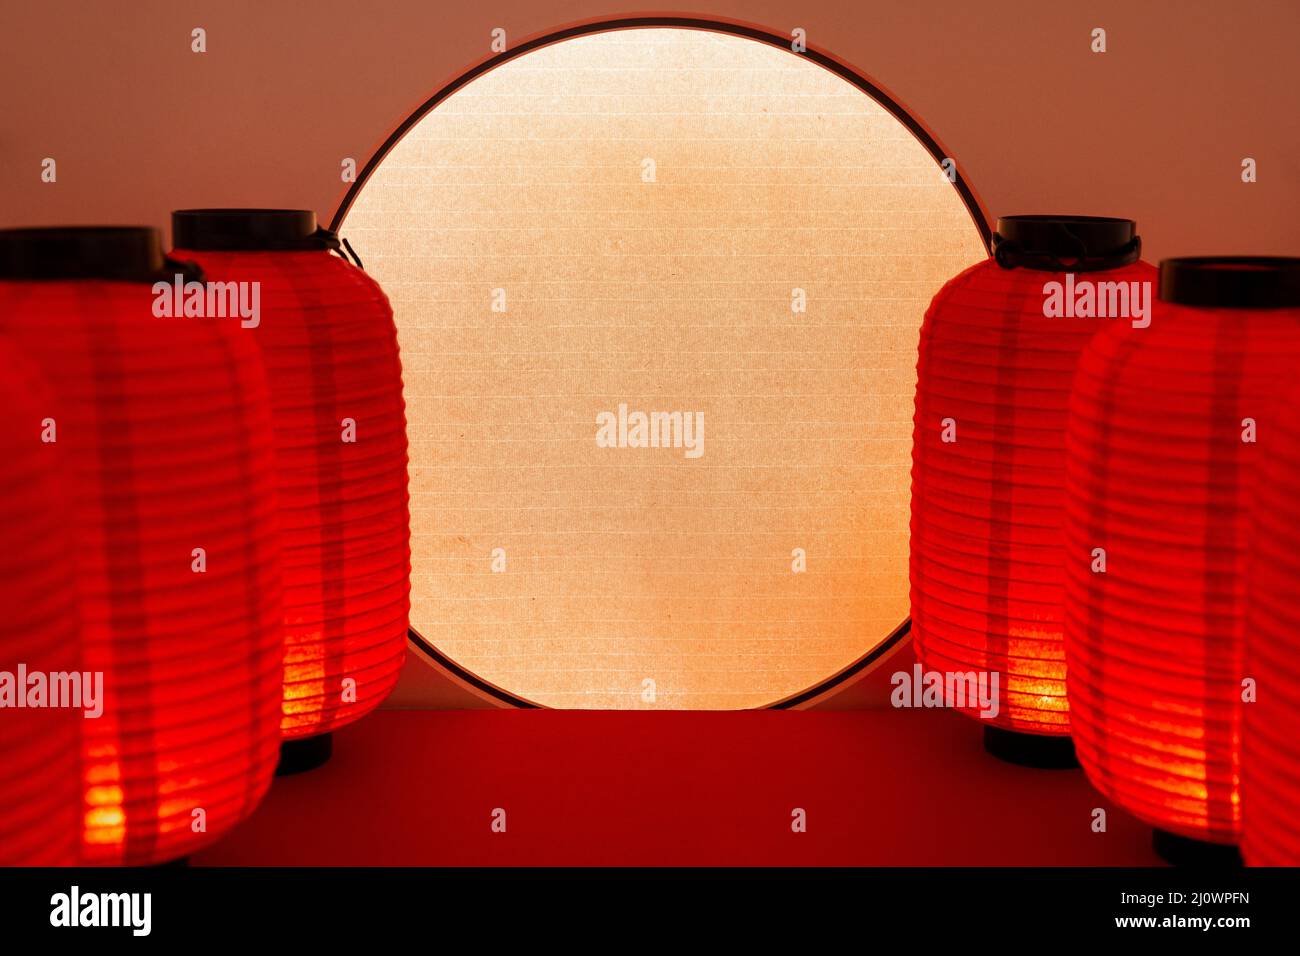 Cultura china, linterna roja china y pantalla de proyección circular creativa Foto de stock